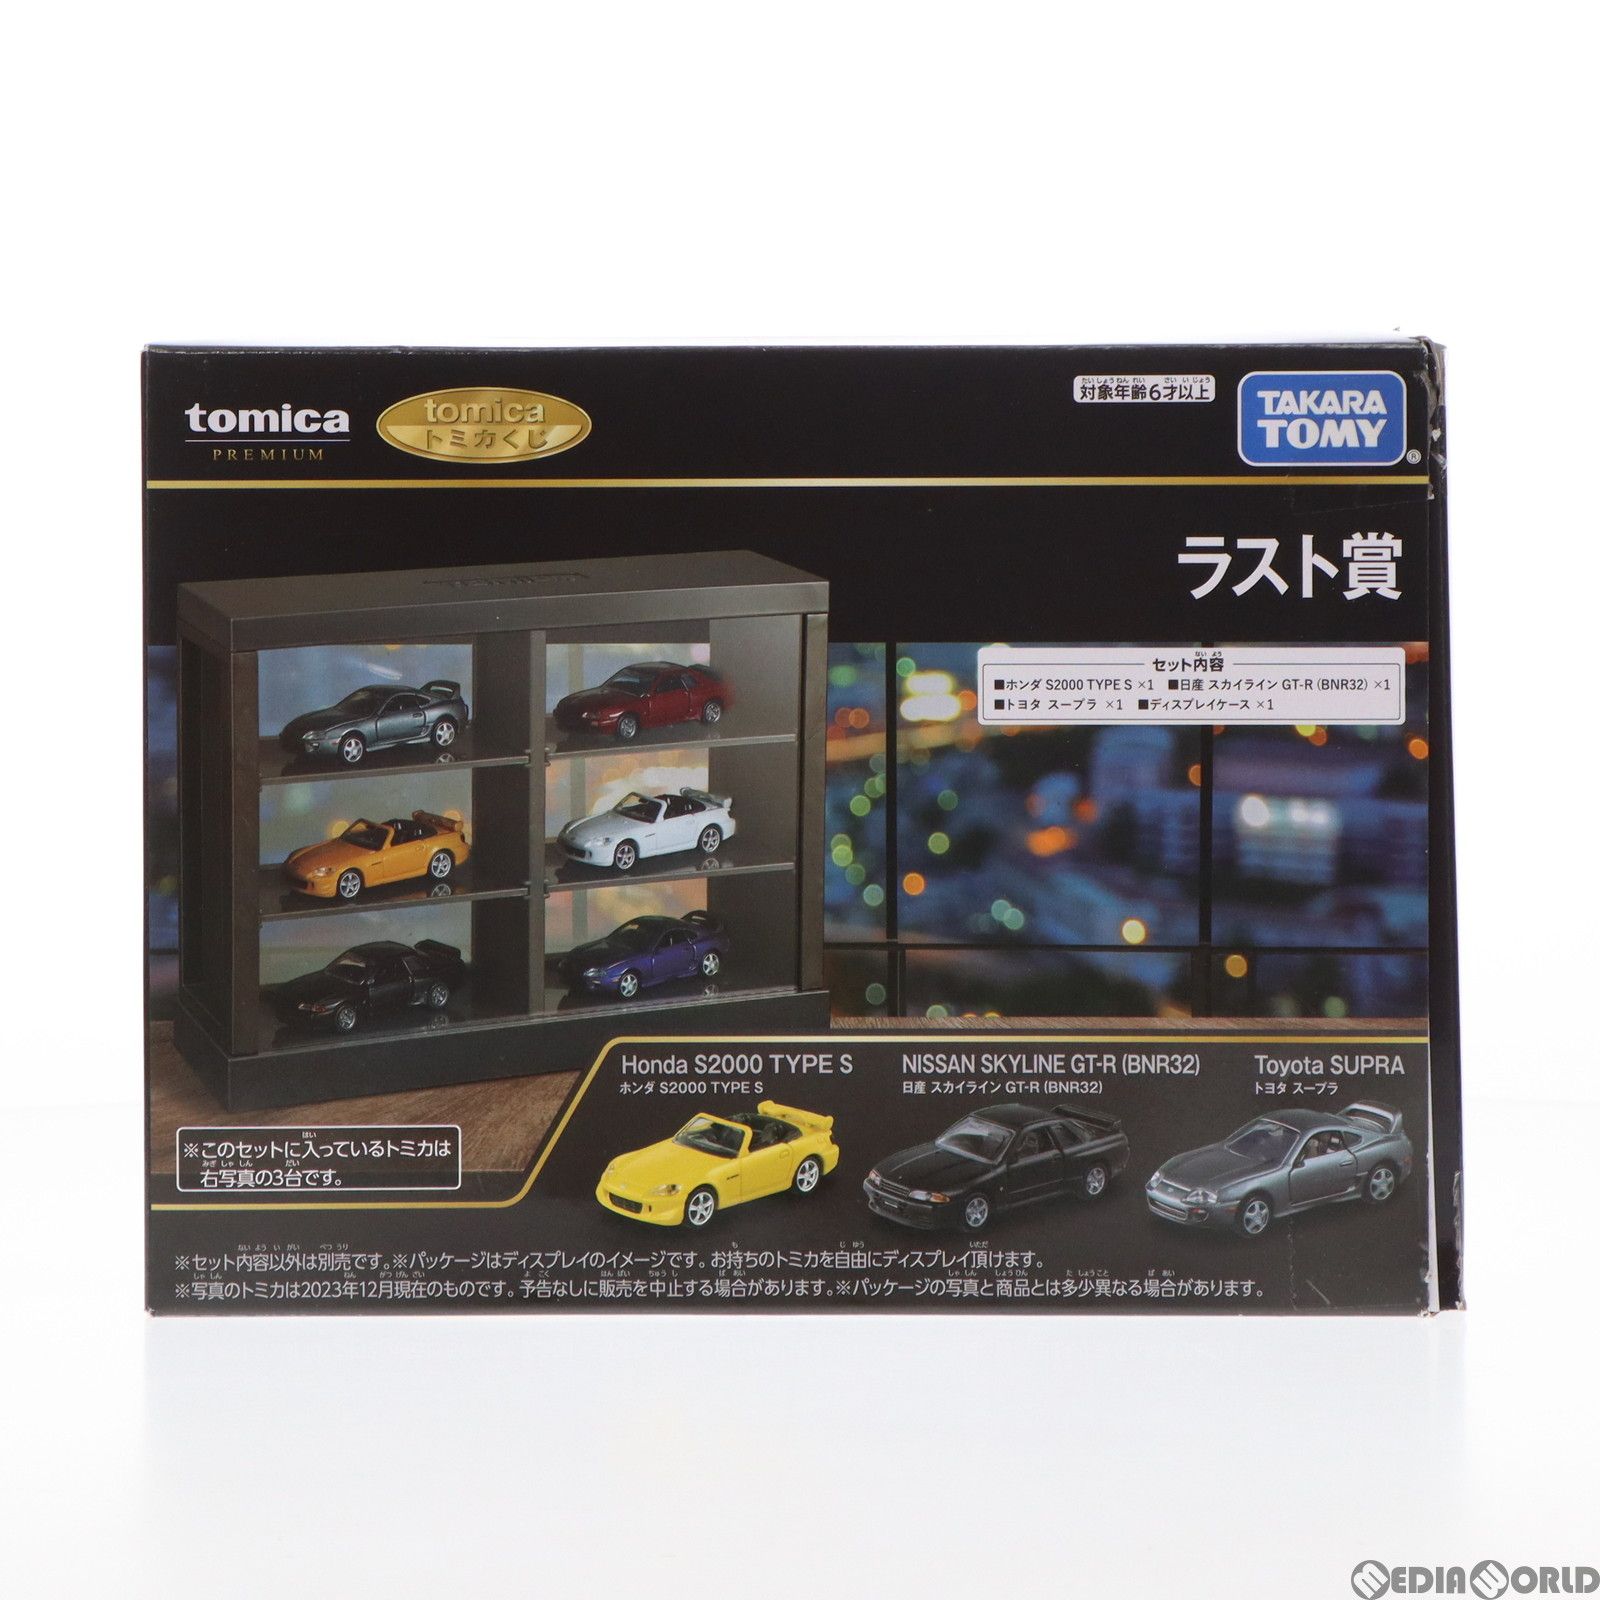 ラスト賞 ホンダ S2000 TYPE S+日産 スカイライン GT-R BNR32+トヨタ 